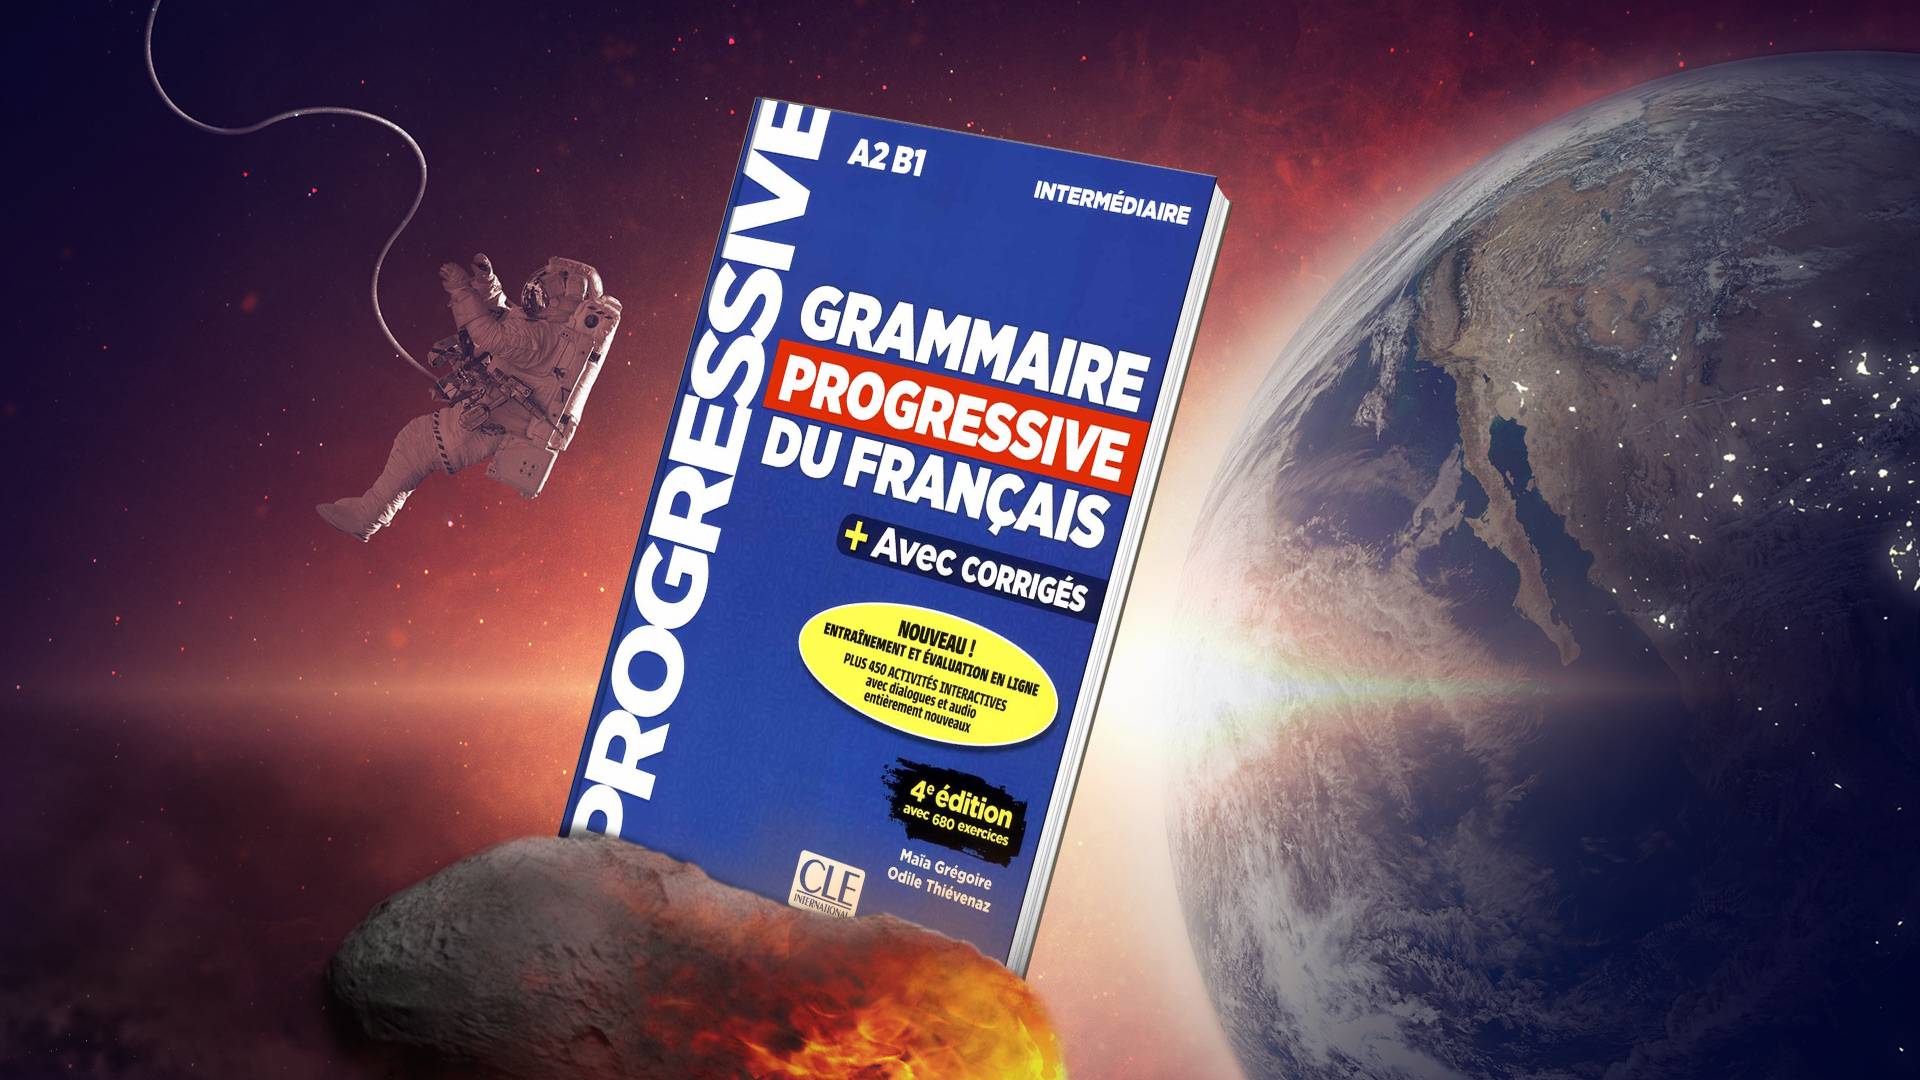 خرید کتاب زبان | فروشگاه اینترنتی کتاب زبان | Grammaire Progressive Du Francais A2 B1 Intermediaire 4e Edition | گرامر پروگرسیو فرانسه اینترمدیت ویرایش چهارم